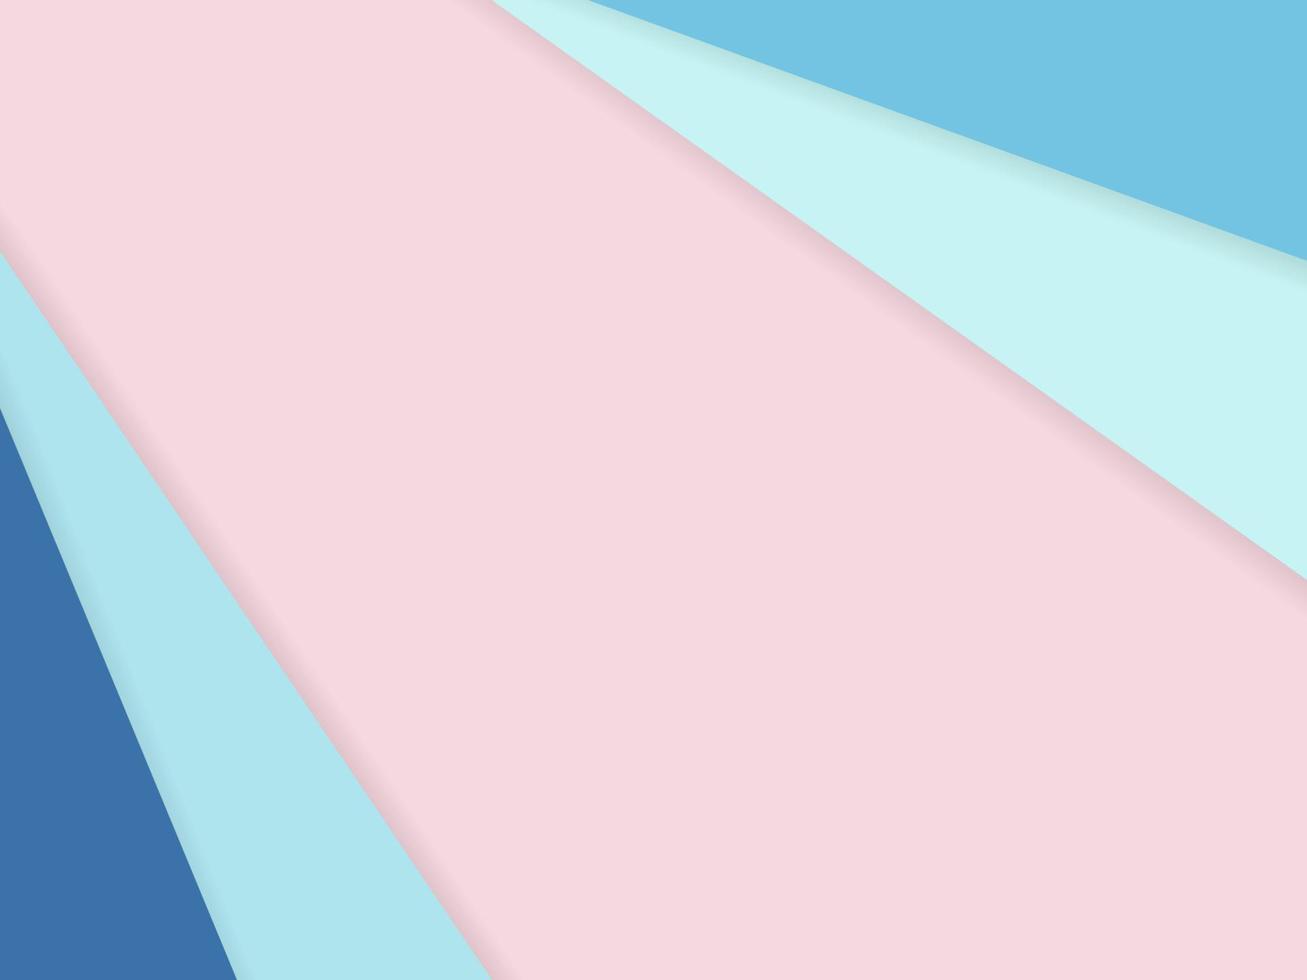 abstrakter pastellfarbener Hintergrund durch Papierblatt-Overlay überlappen Blauton auf Rosa. für Hintergrund, Banner, Präsentationsvorlage. vektor